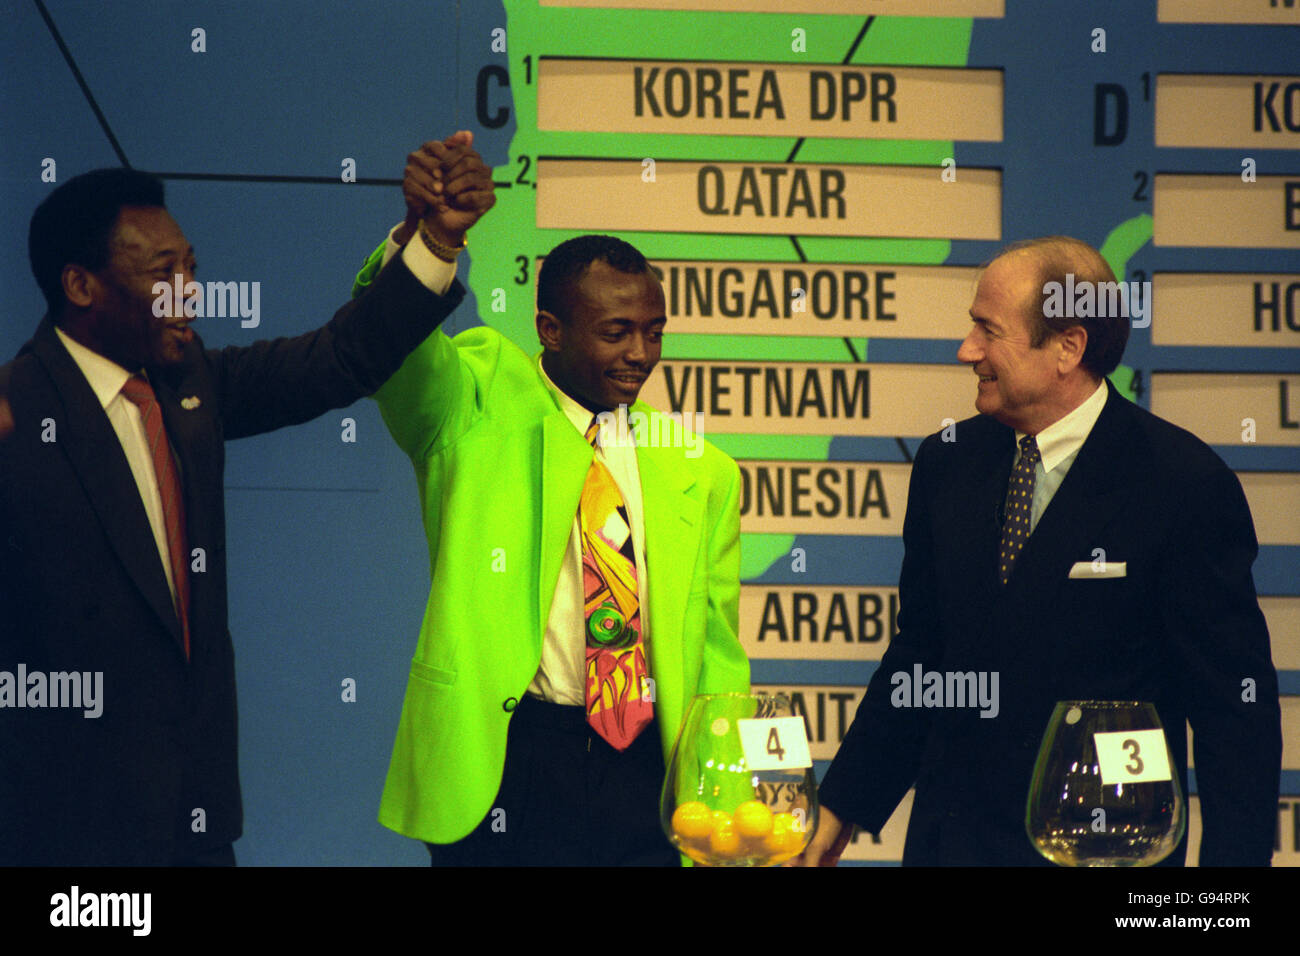 La superstar brésilienne Pele (l) élève le bras d'Abedi Pele (au centre) lors du dernier tirage au sort de qualification de coupe du monde pour la région de Conmebol, qui s'est tenu à New York, aux États-Unis. Le Secrétaire général, Sepp Blatter (r), regarde. Banque D'Images